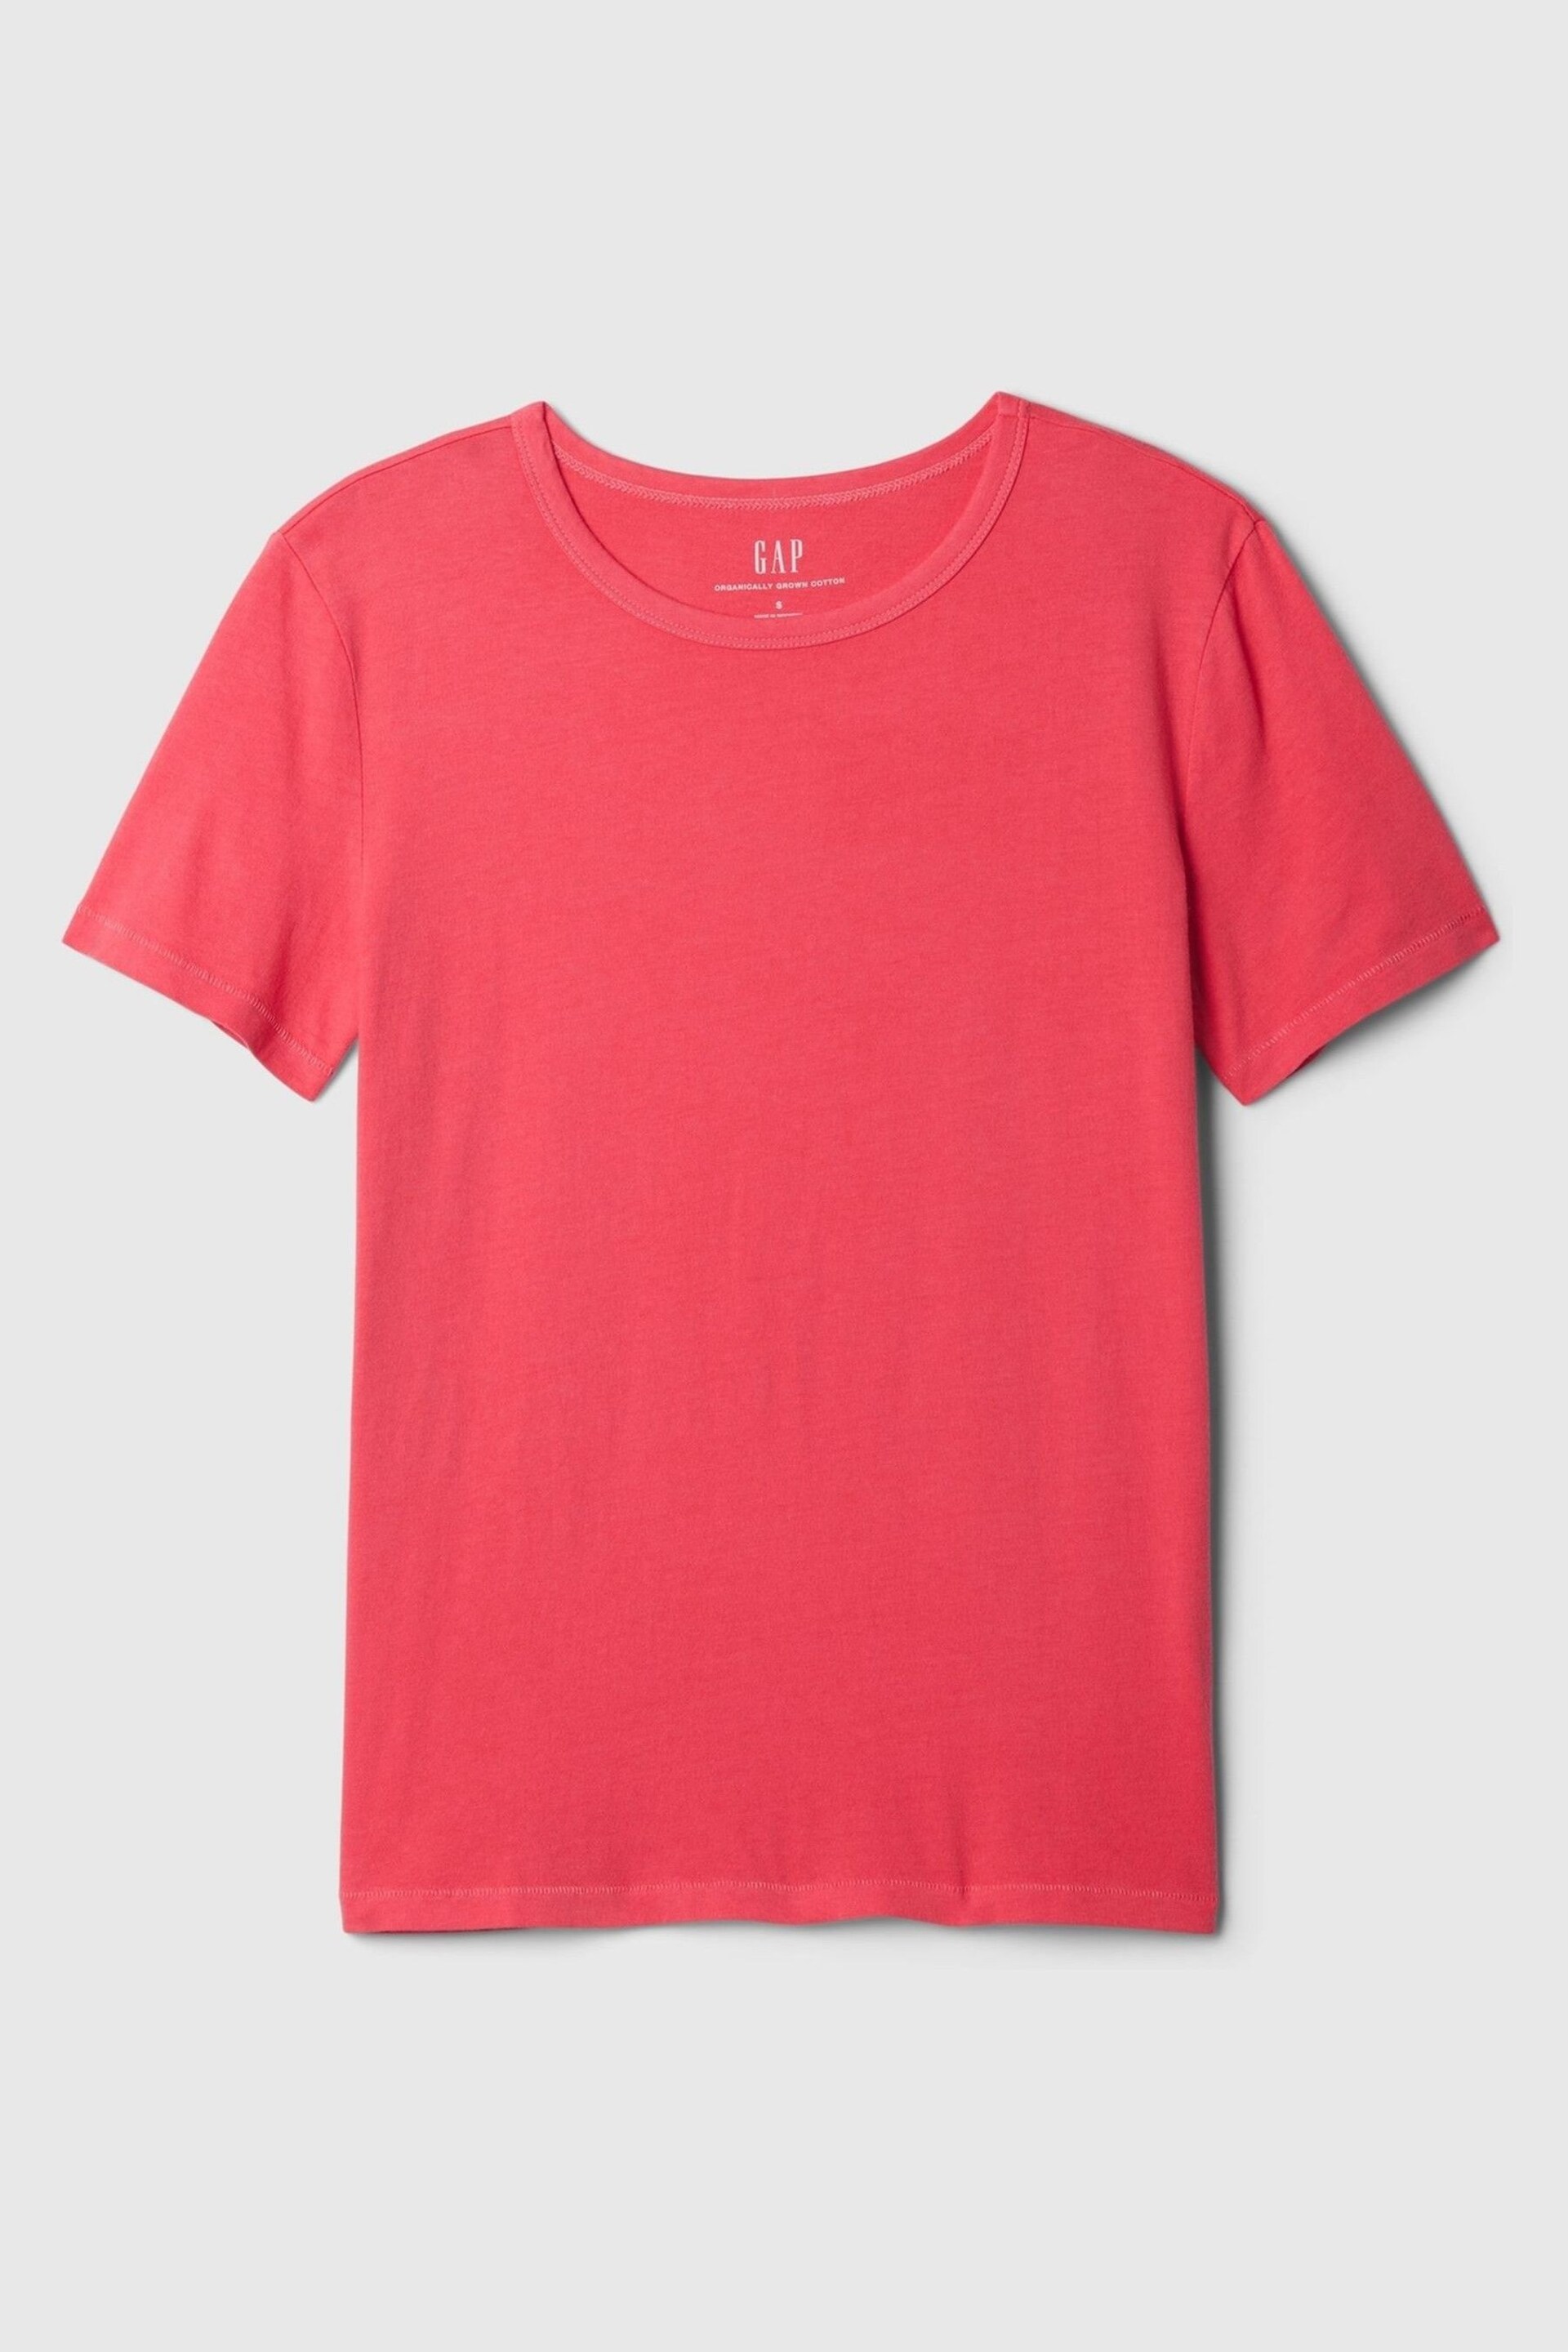 Gap Pink Organic Cotton Vintage Crew Neck T-Shirt - Image 4 of 4